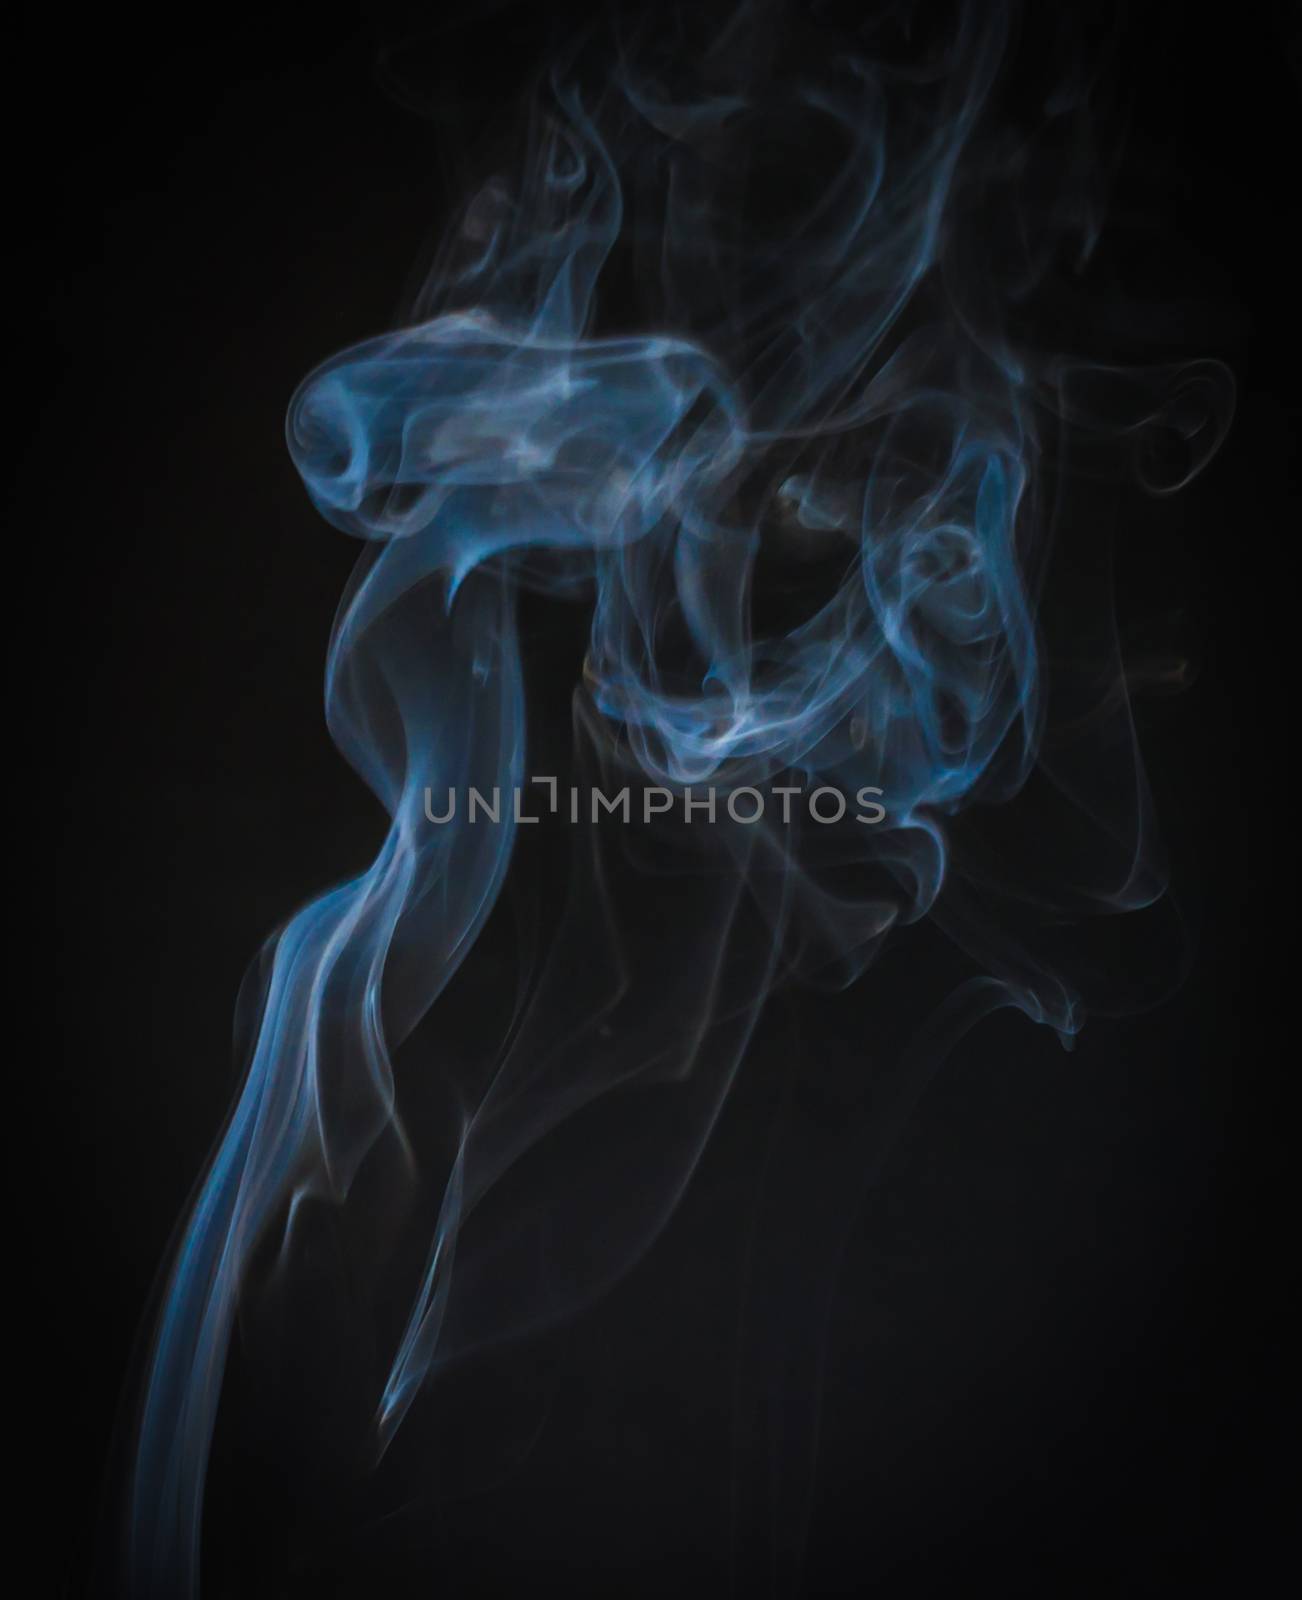 Beautiful of smoke movement as art by dul_ny